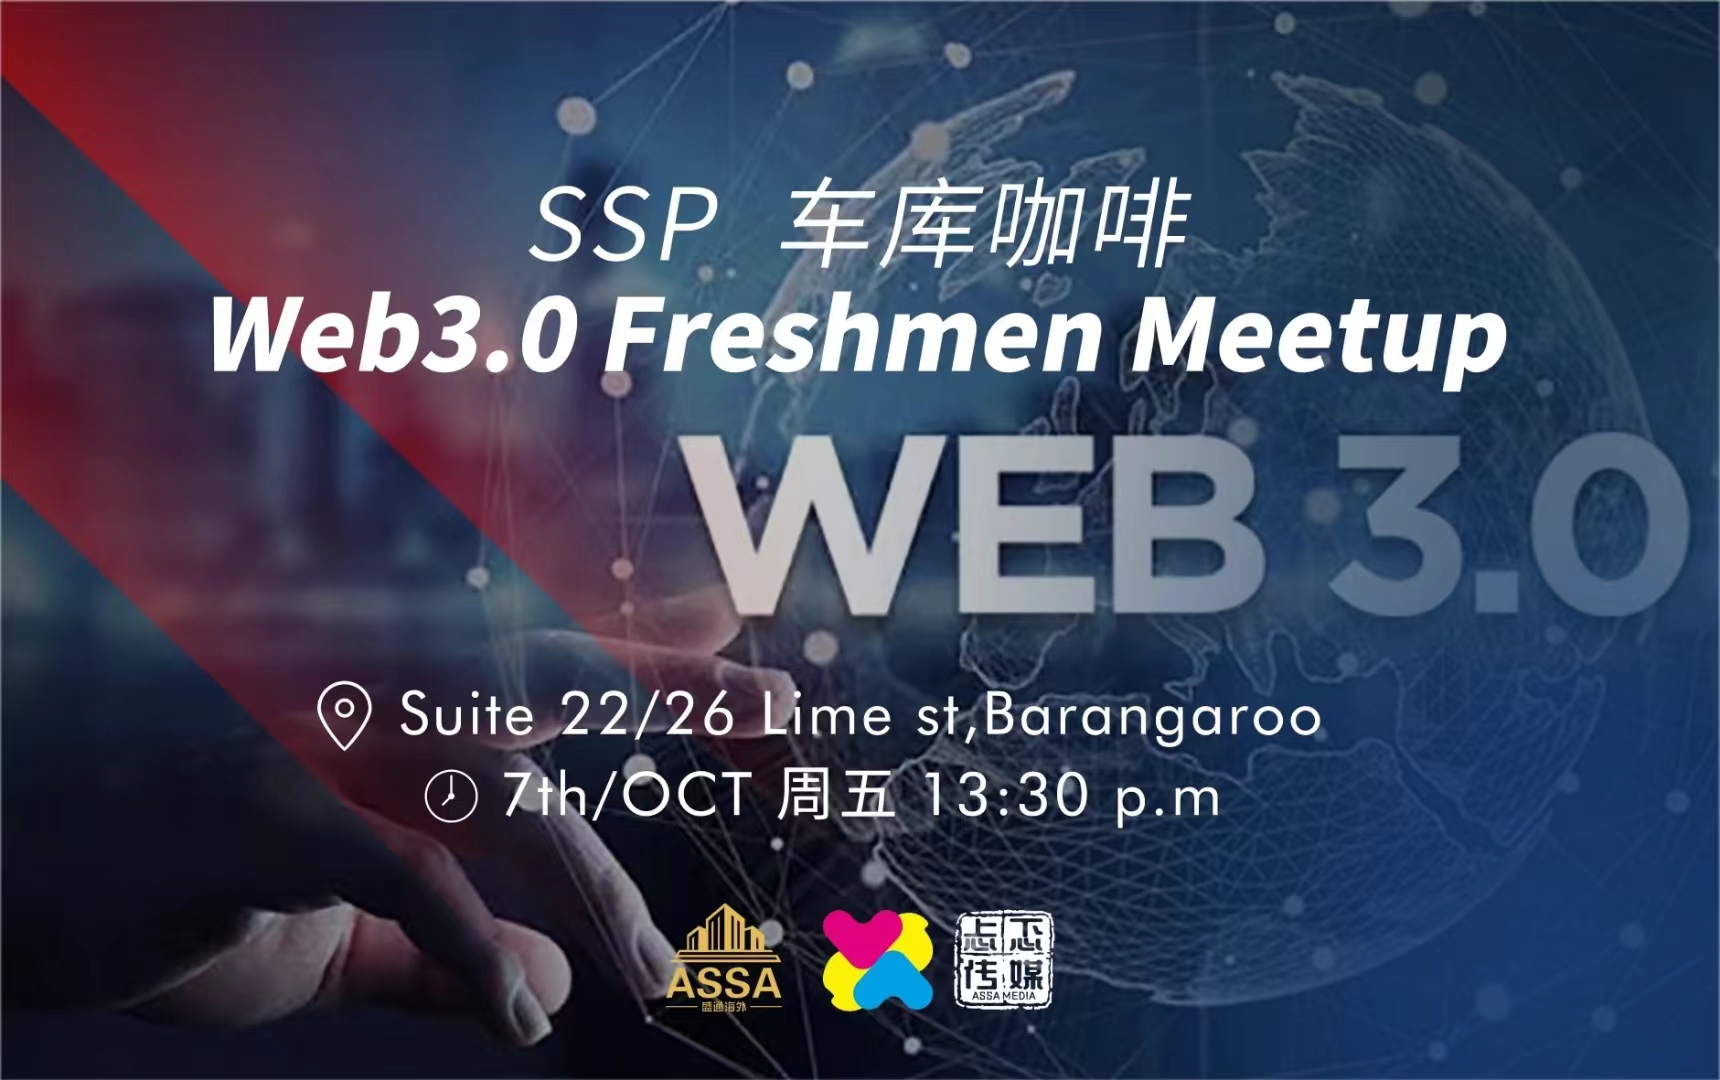 Web3.0 Freshmen Meetup